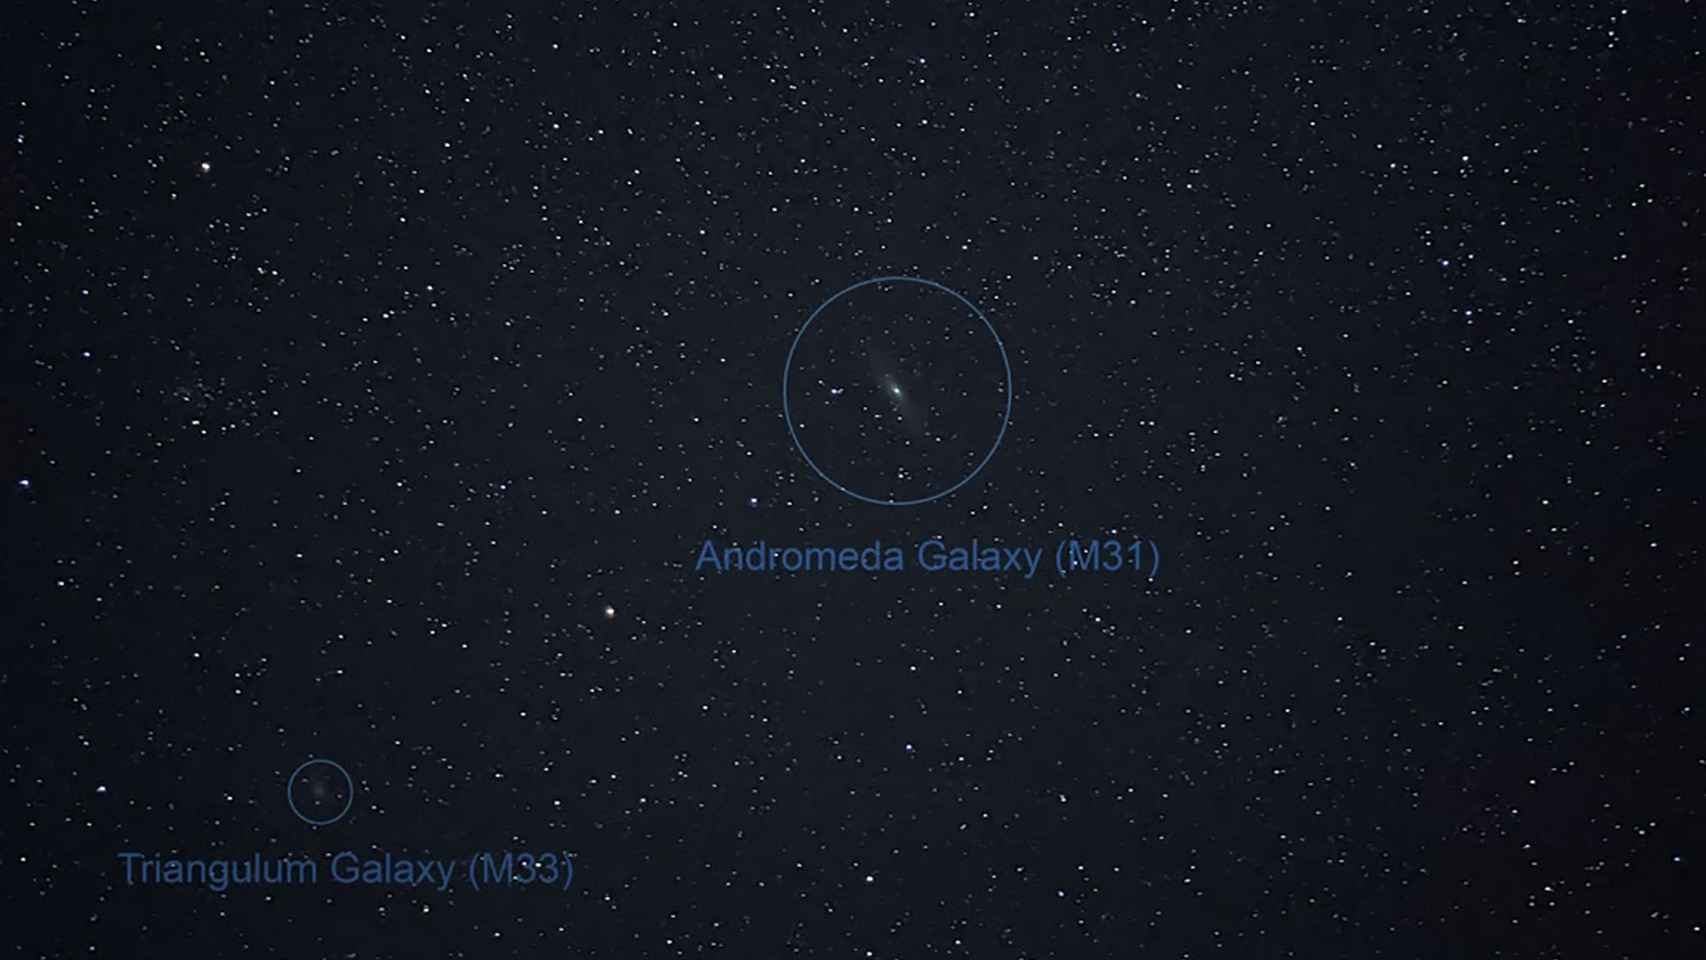 Otro ejemplo de astrofotografía realizada con el Google Pixel 4